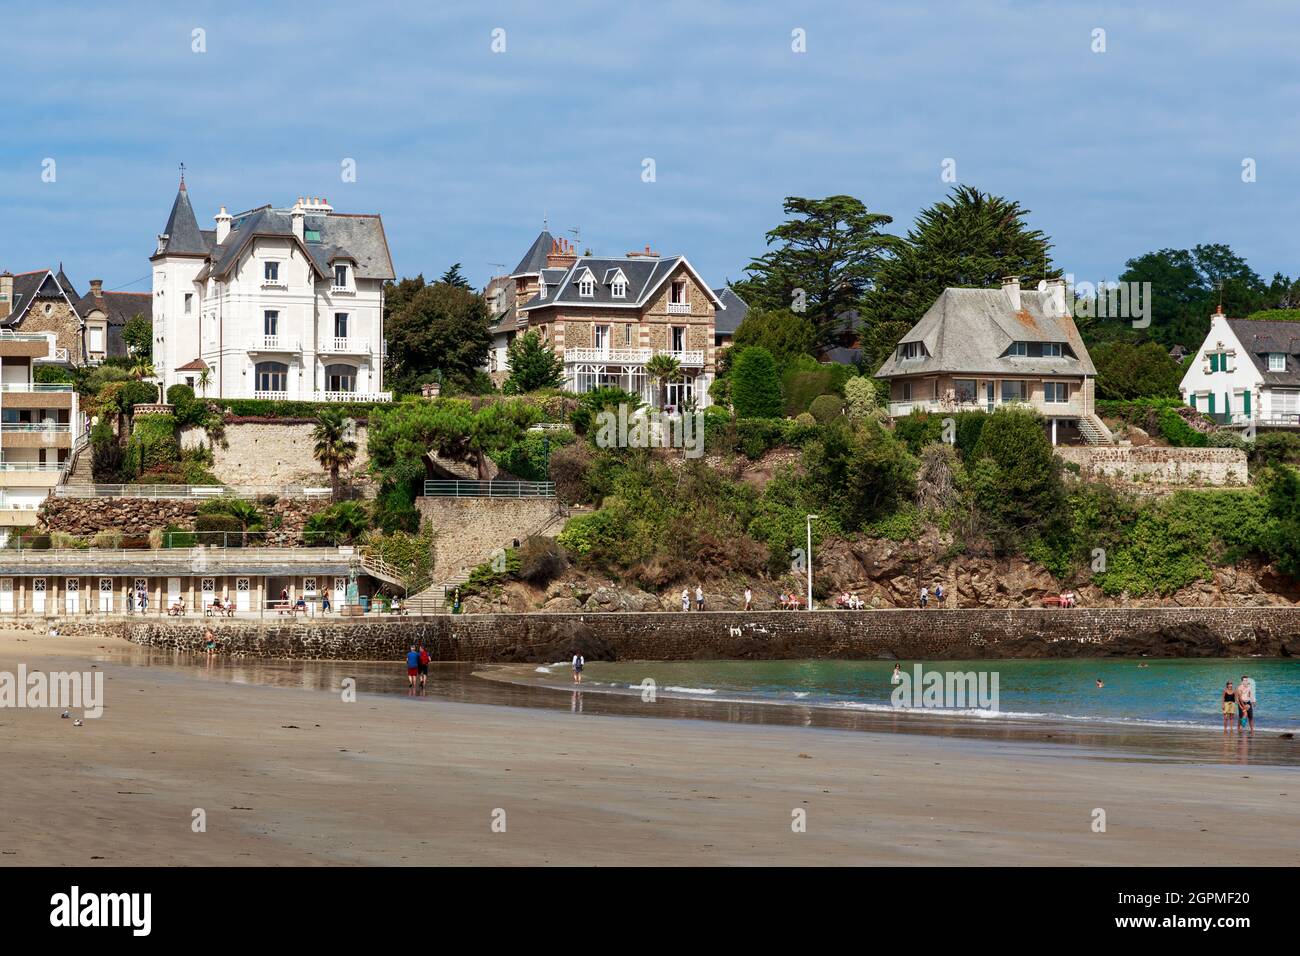 DINARD, FRANCIA - 3 SETTEMBRE 2019: Si tratta di una spiaggia su una passeggiata alla moda con ville in una localita' bretone in bassa marea. Foto Stock